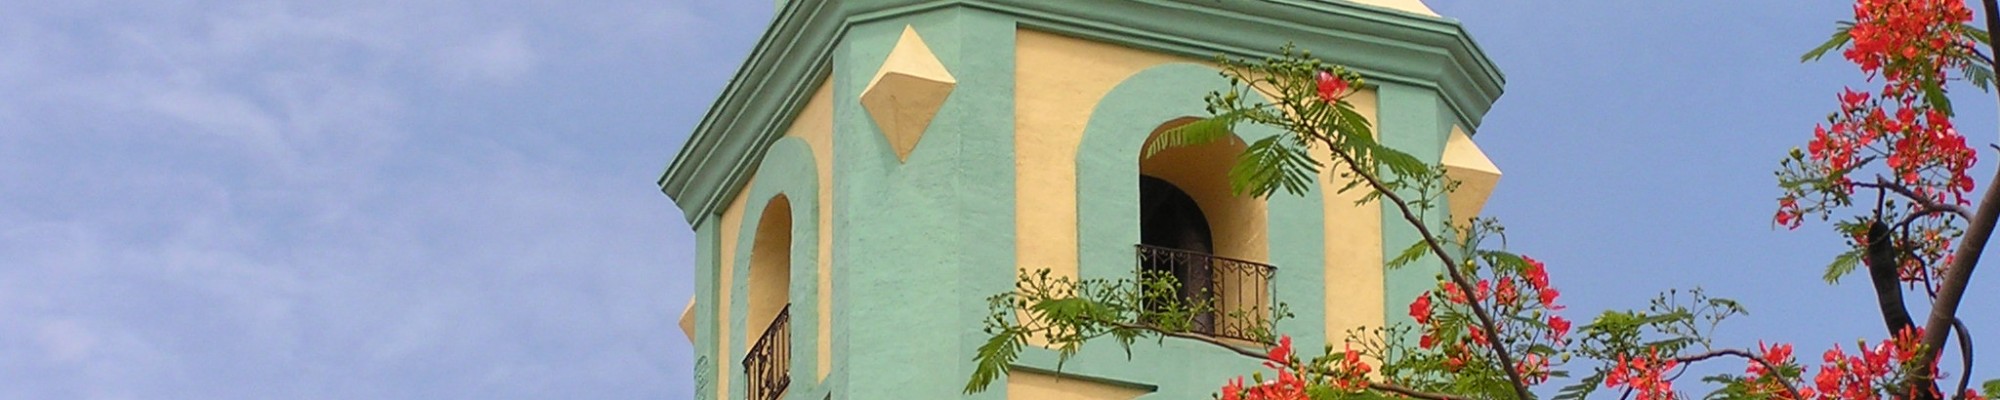 Trinidad Church